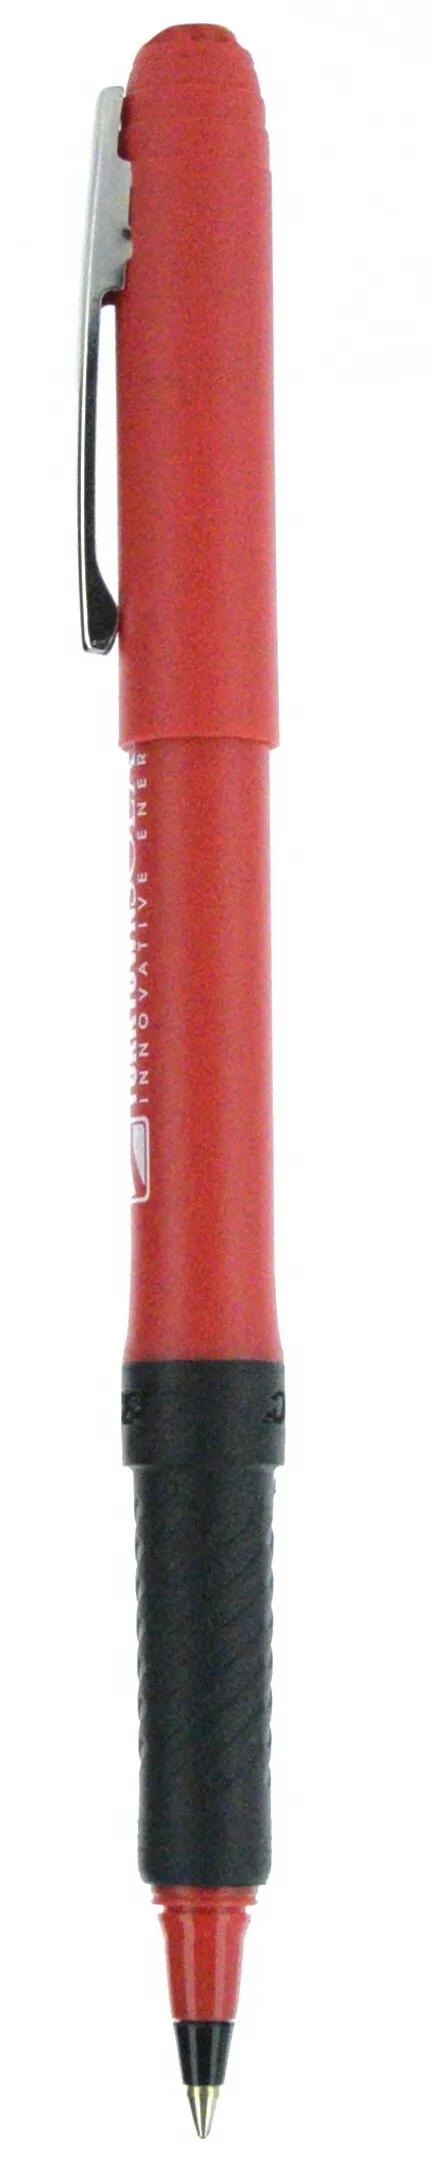 BIC® Grip Roller Pen 101 of 147